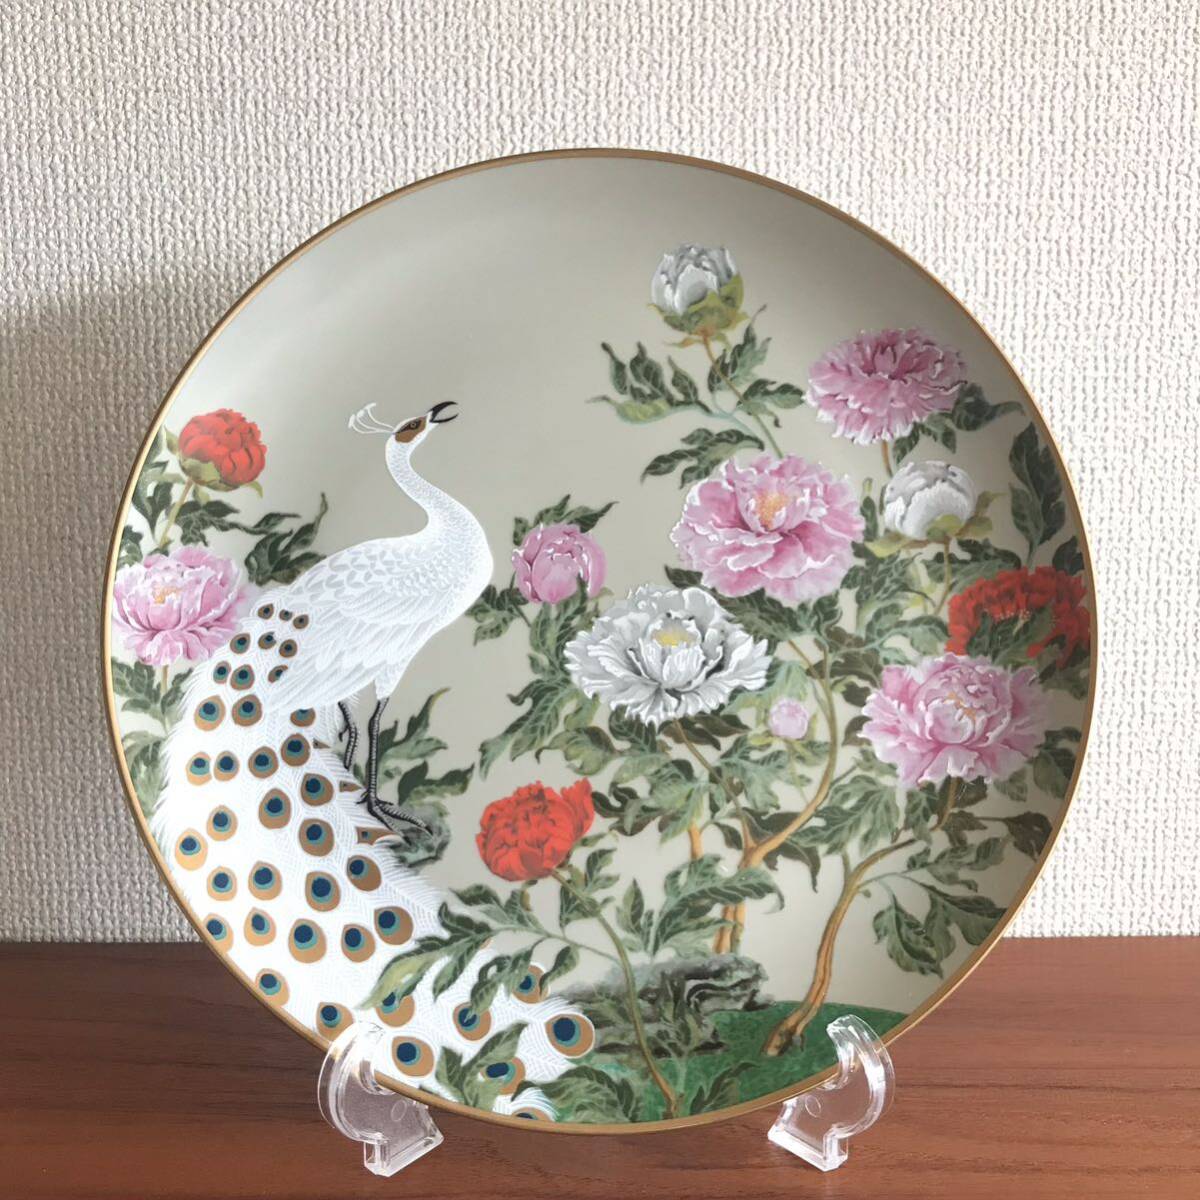 フランクリンポーセリン 皿 金彩 アメリカ 飾り皿 四季 プレート の画像5